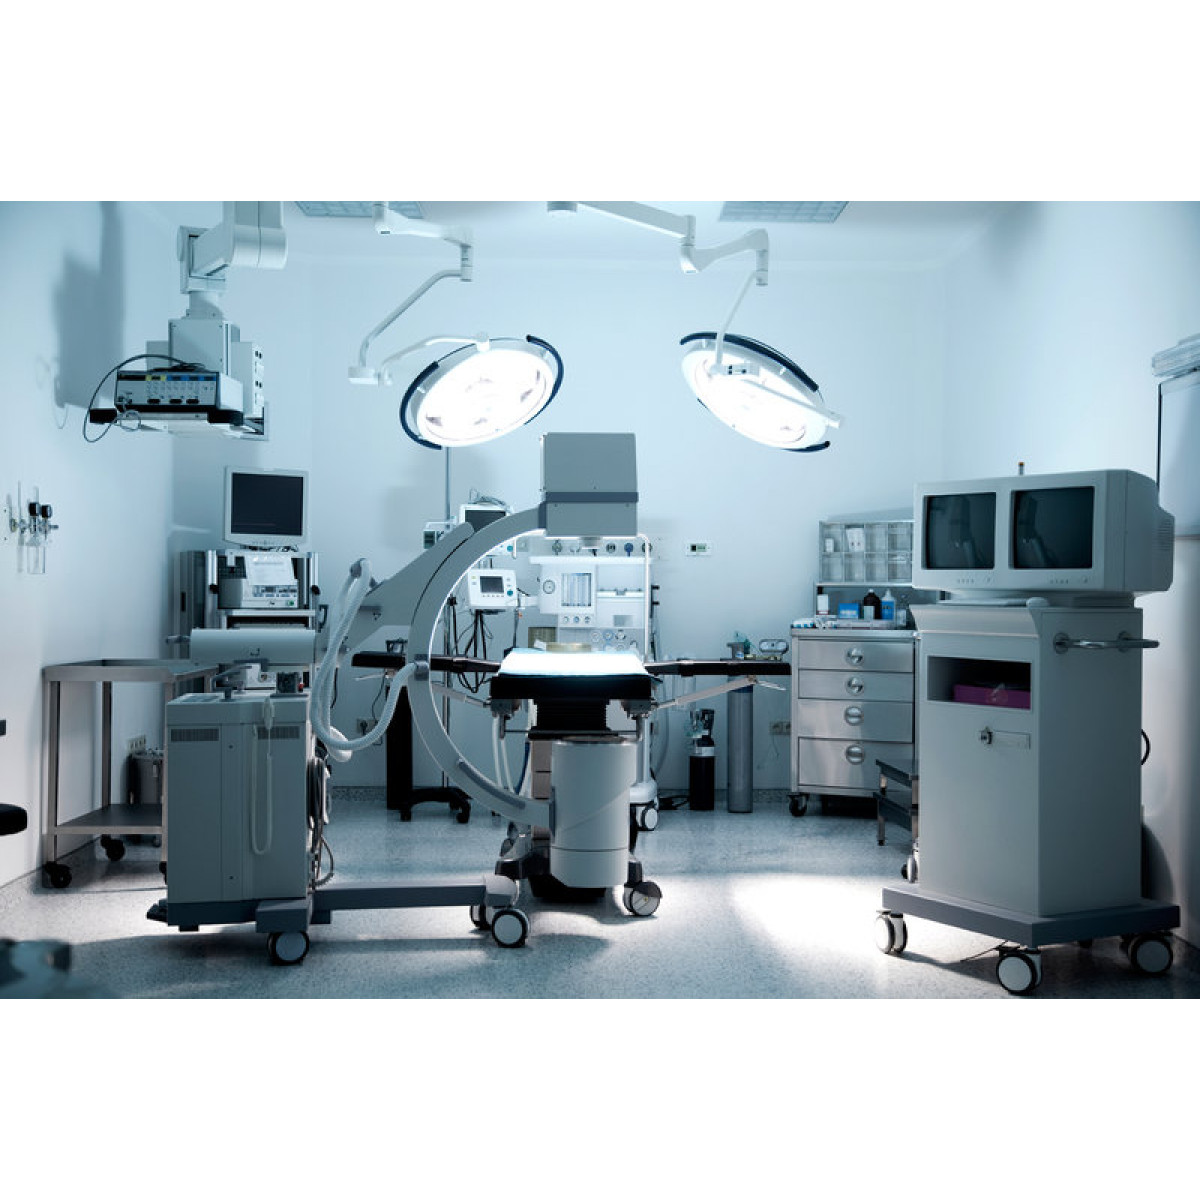 ИБП как способ защиты медицинского оборудования больниц от скачков напряжений